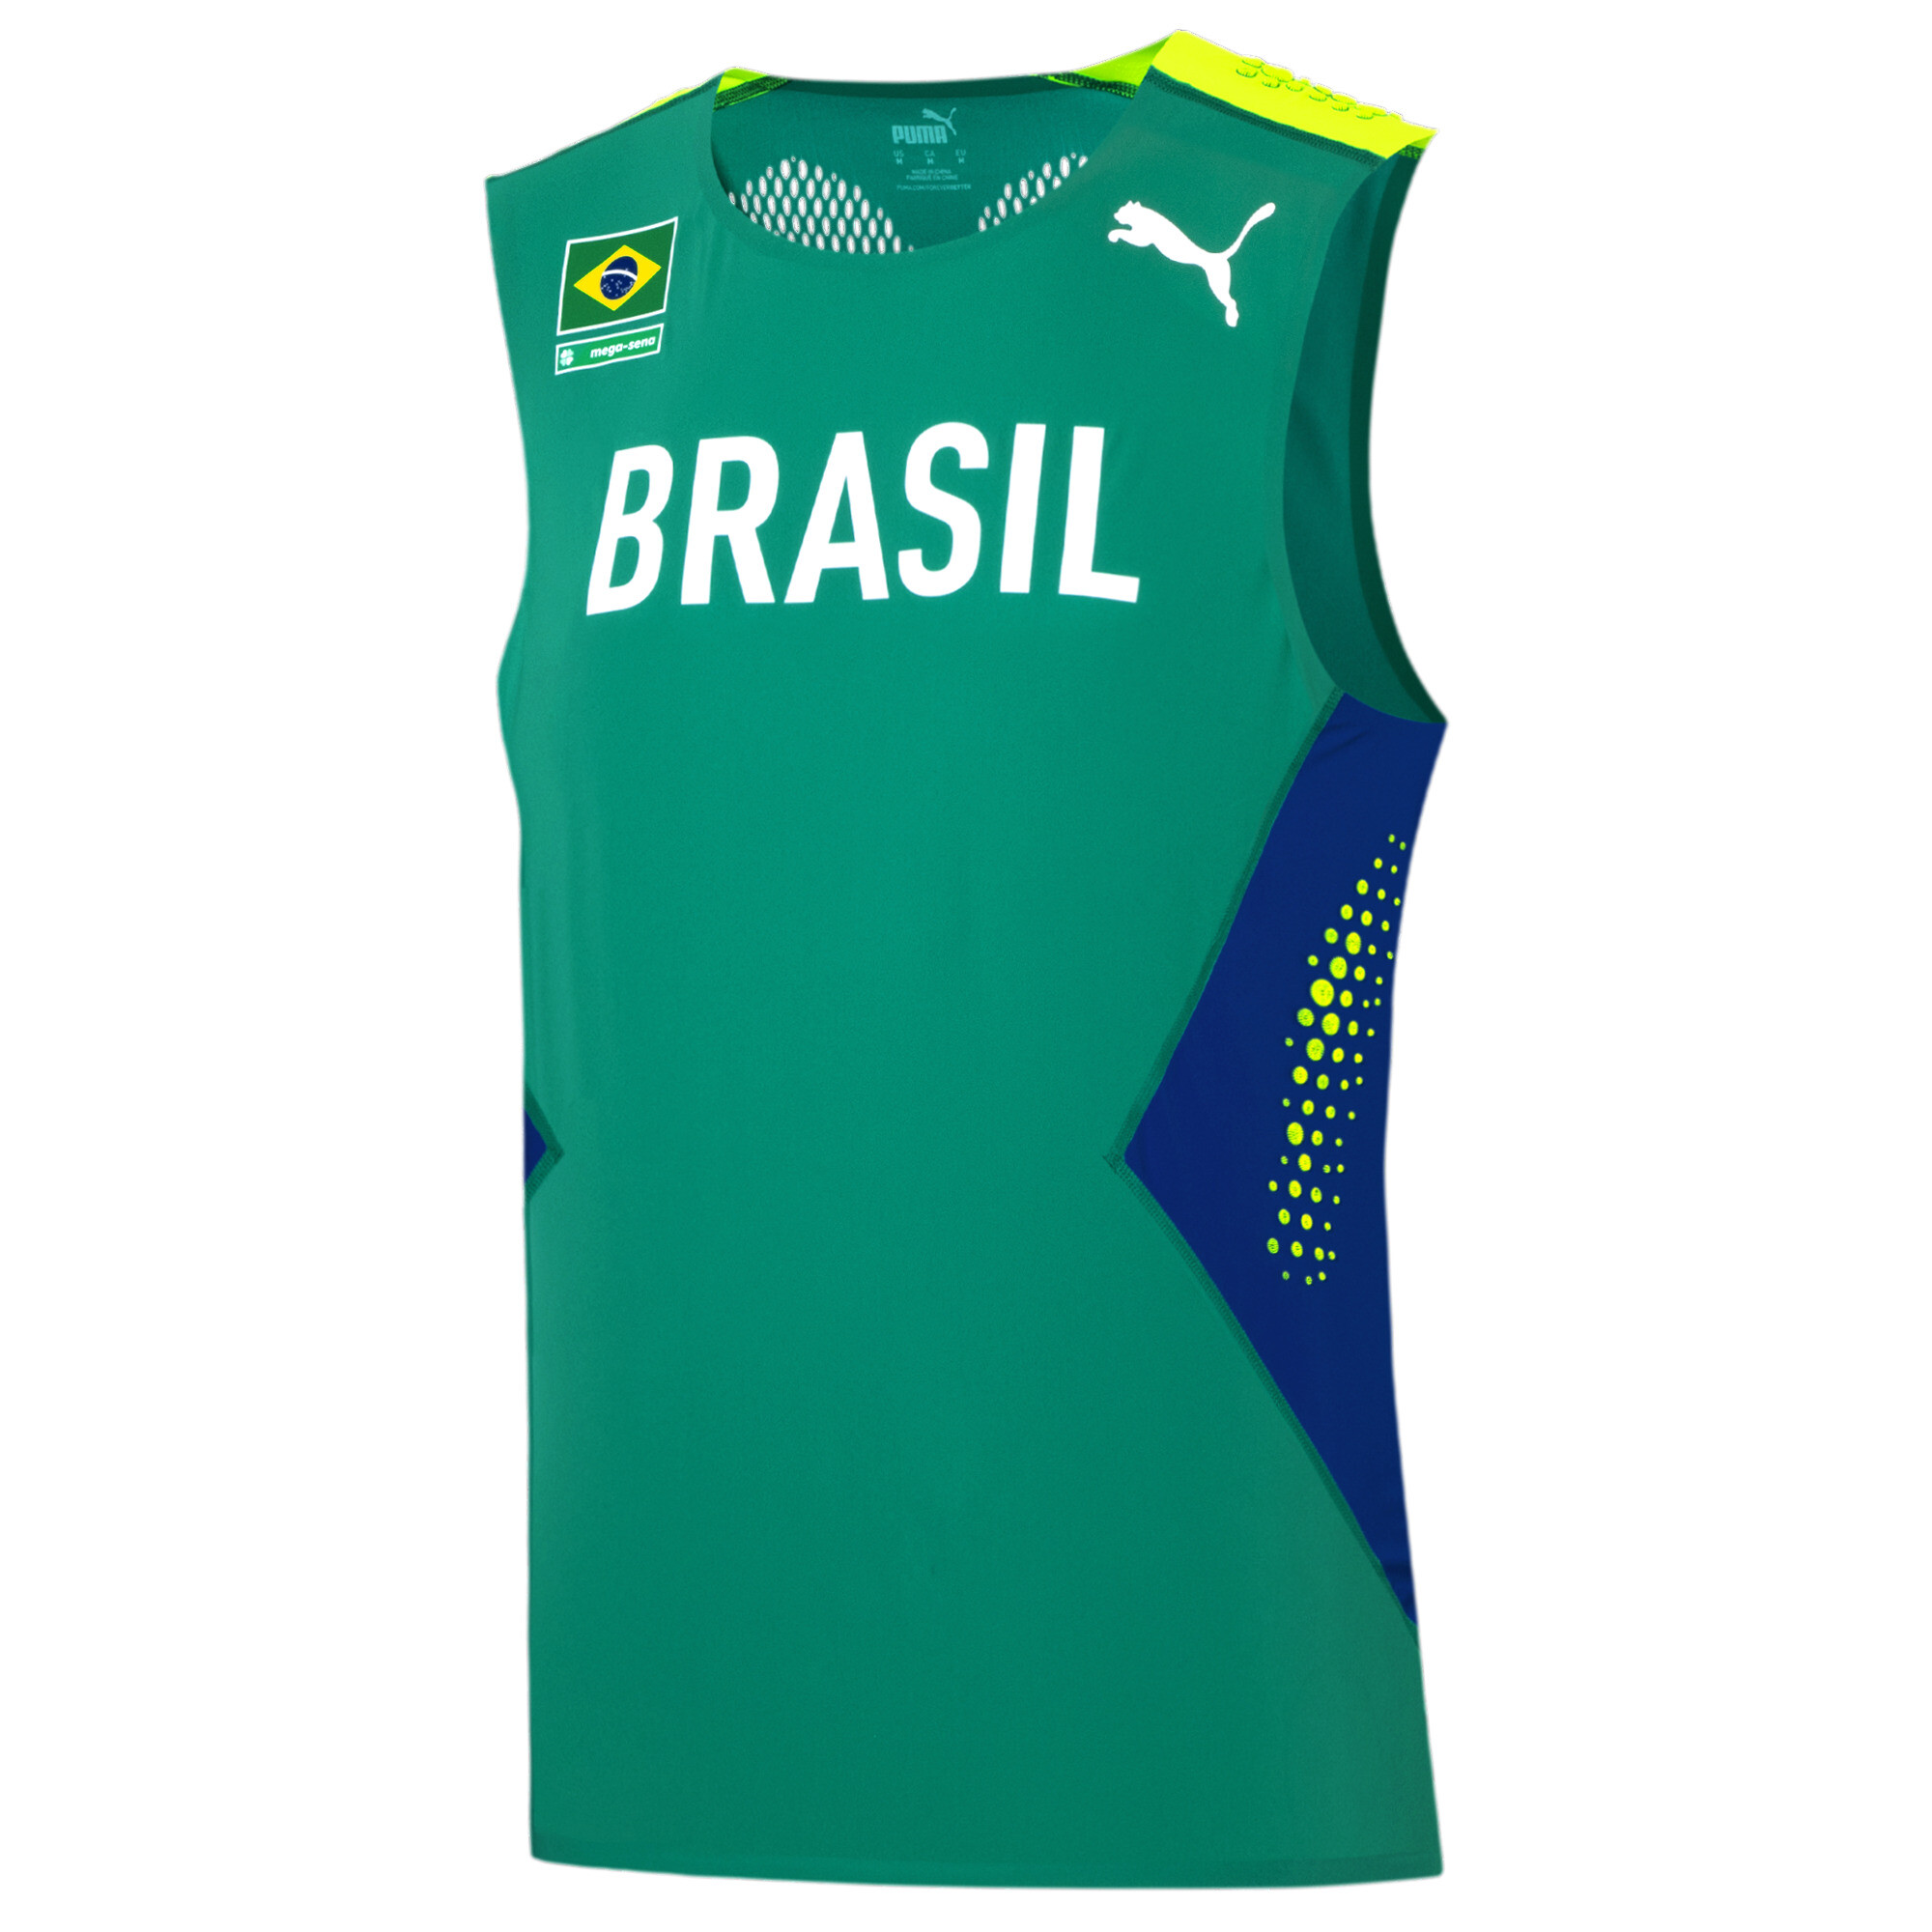 Puma amplia patrocínio à Confederação Brasileira de Atletismo até 2032 -  MKT Esportivo